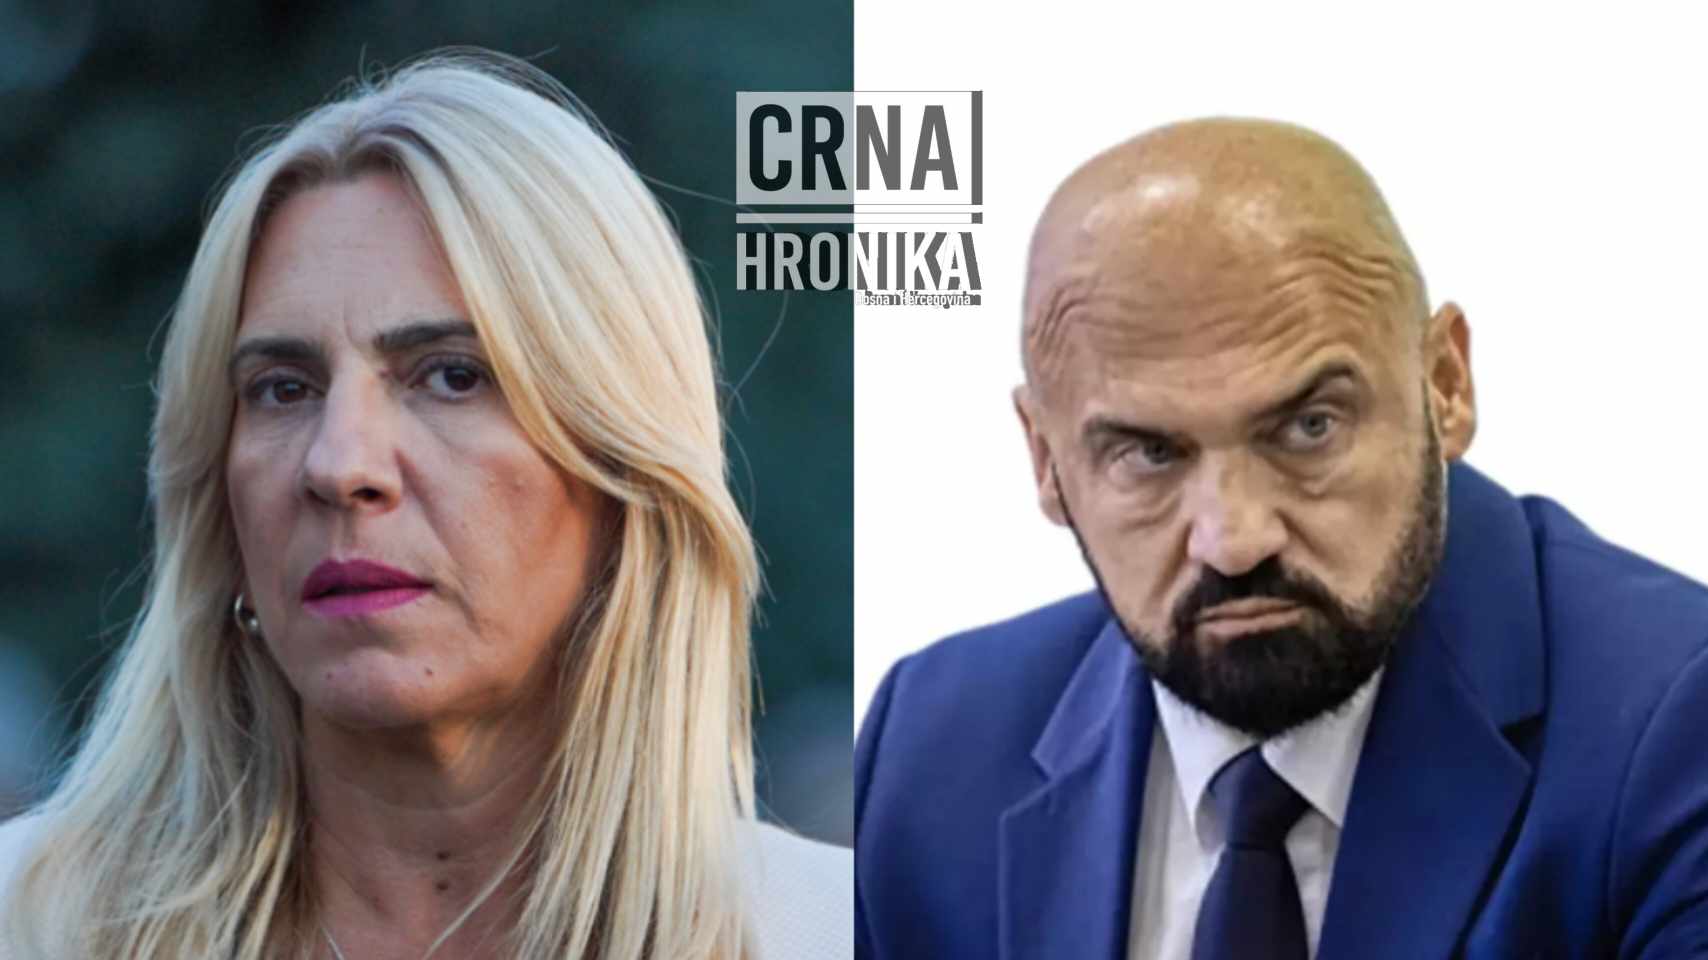 Željka Cvijanović: “Ramo Isak nastavlja da glumi u svom crtanom filmu” |  Crna hronika BiH